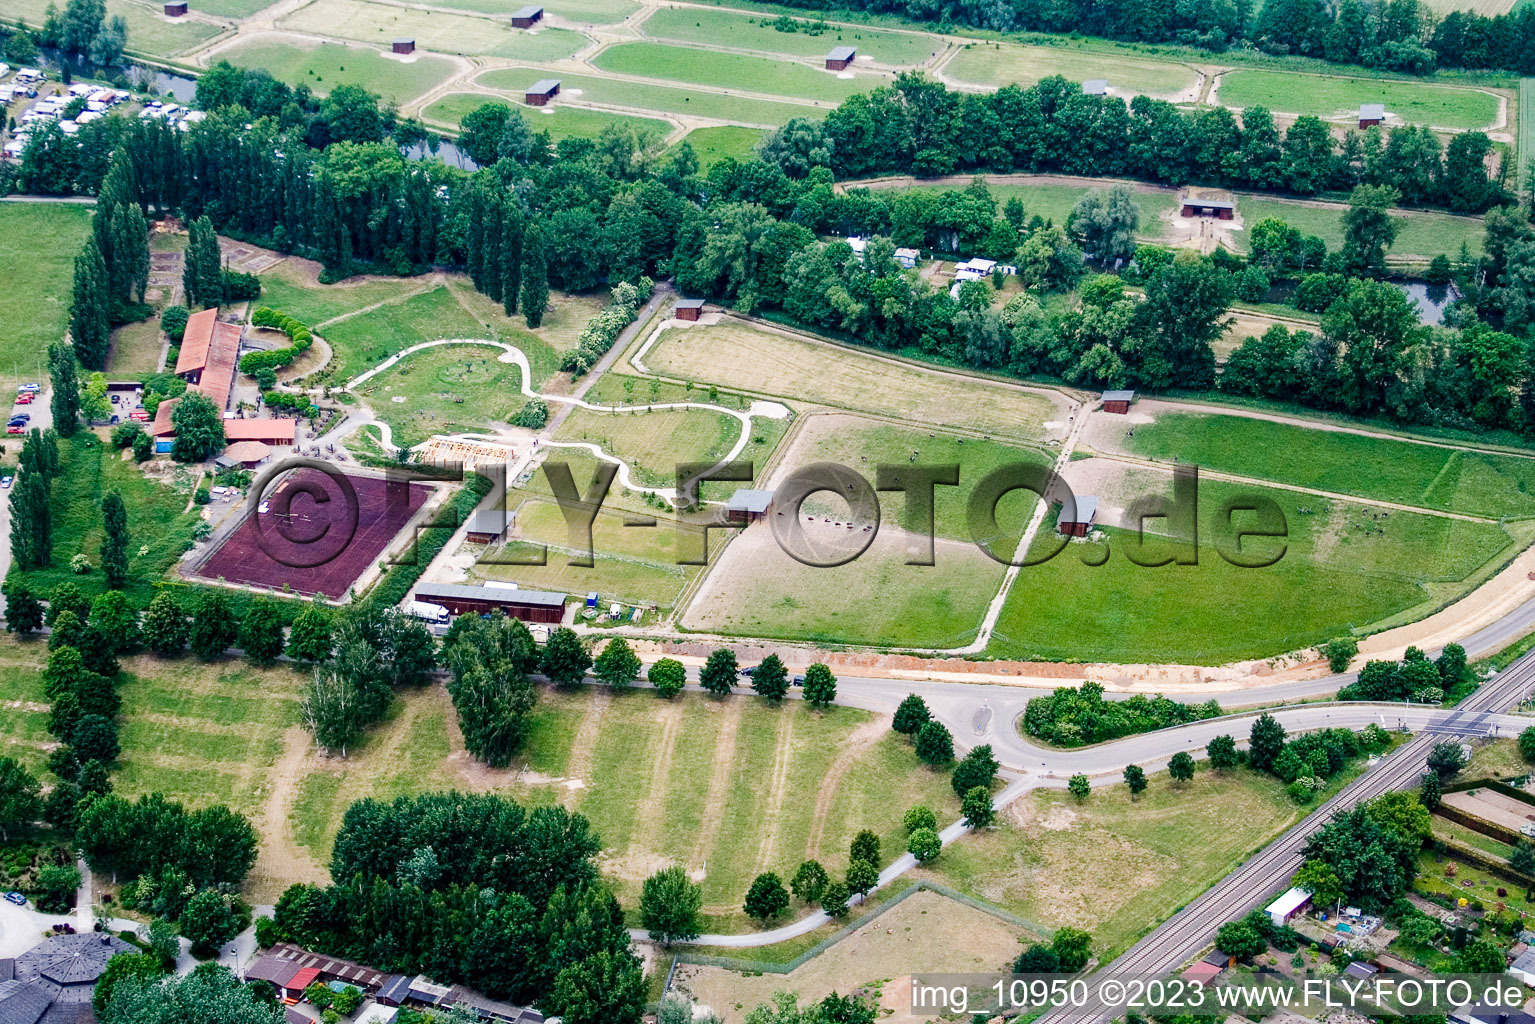 Vue aérienne de Ferme d'autruches à Rülzheim dans le département Rhénanie-Palatinat, Allemagne